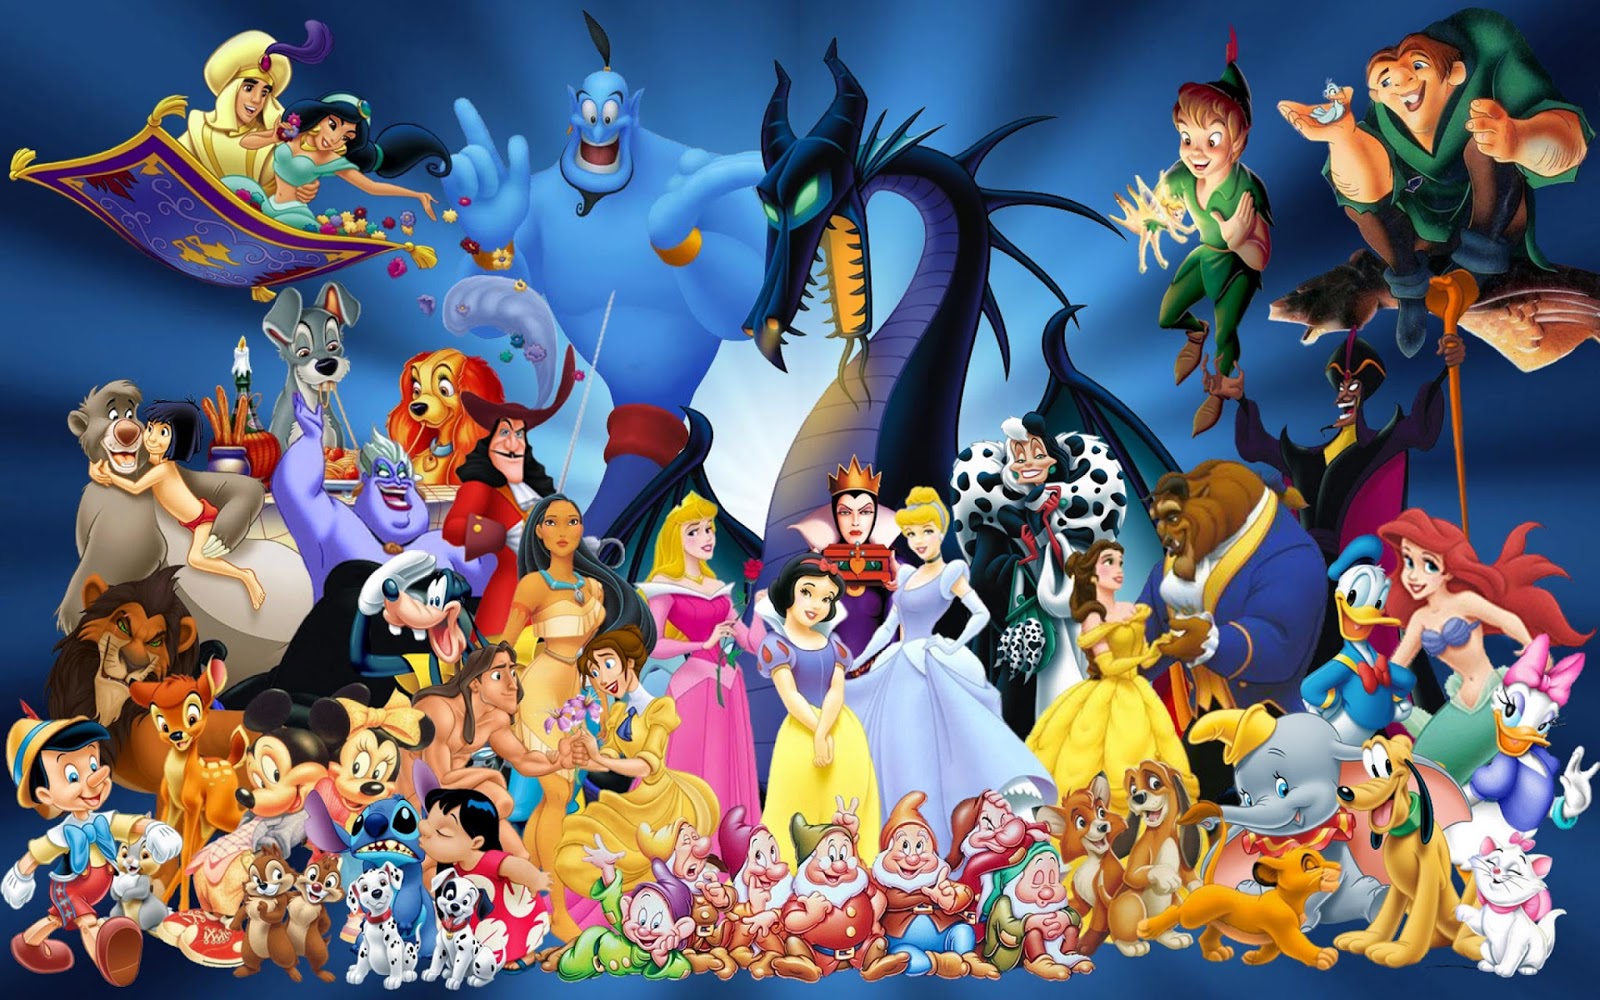 Reids movie round up: Top 10 Animated Disney Movies